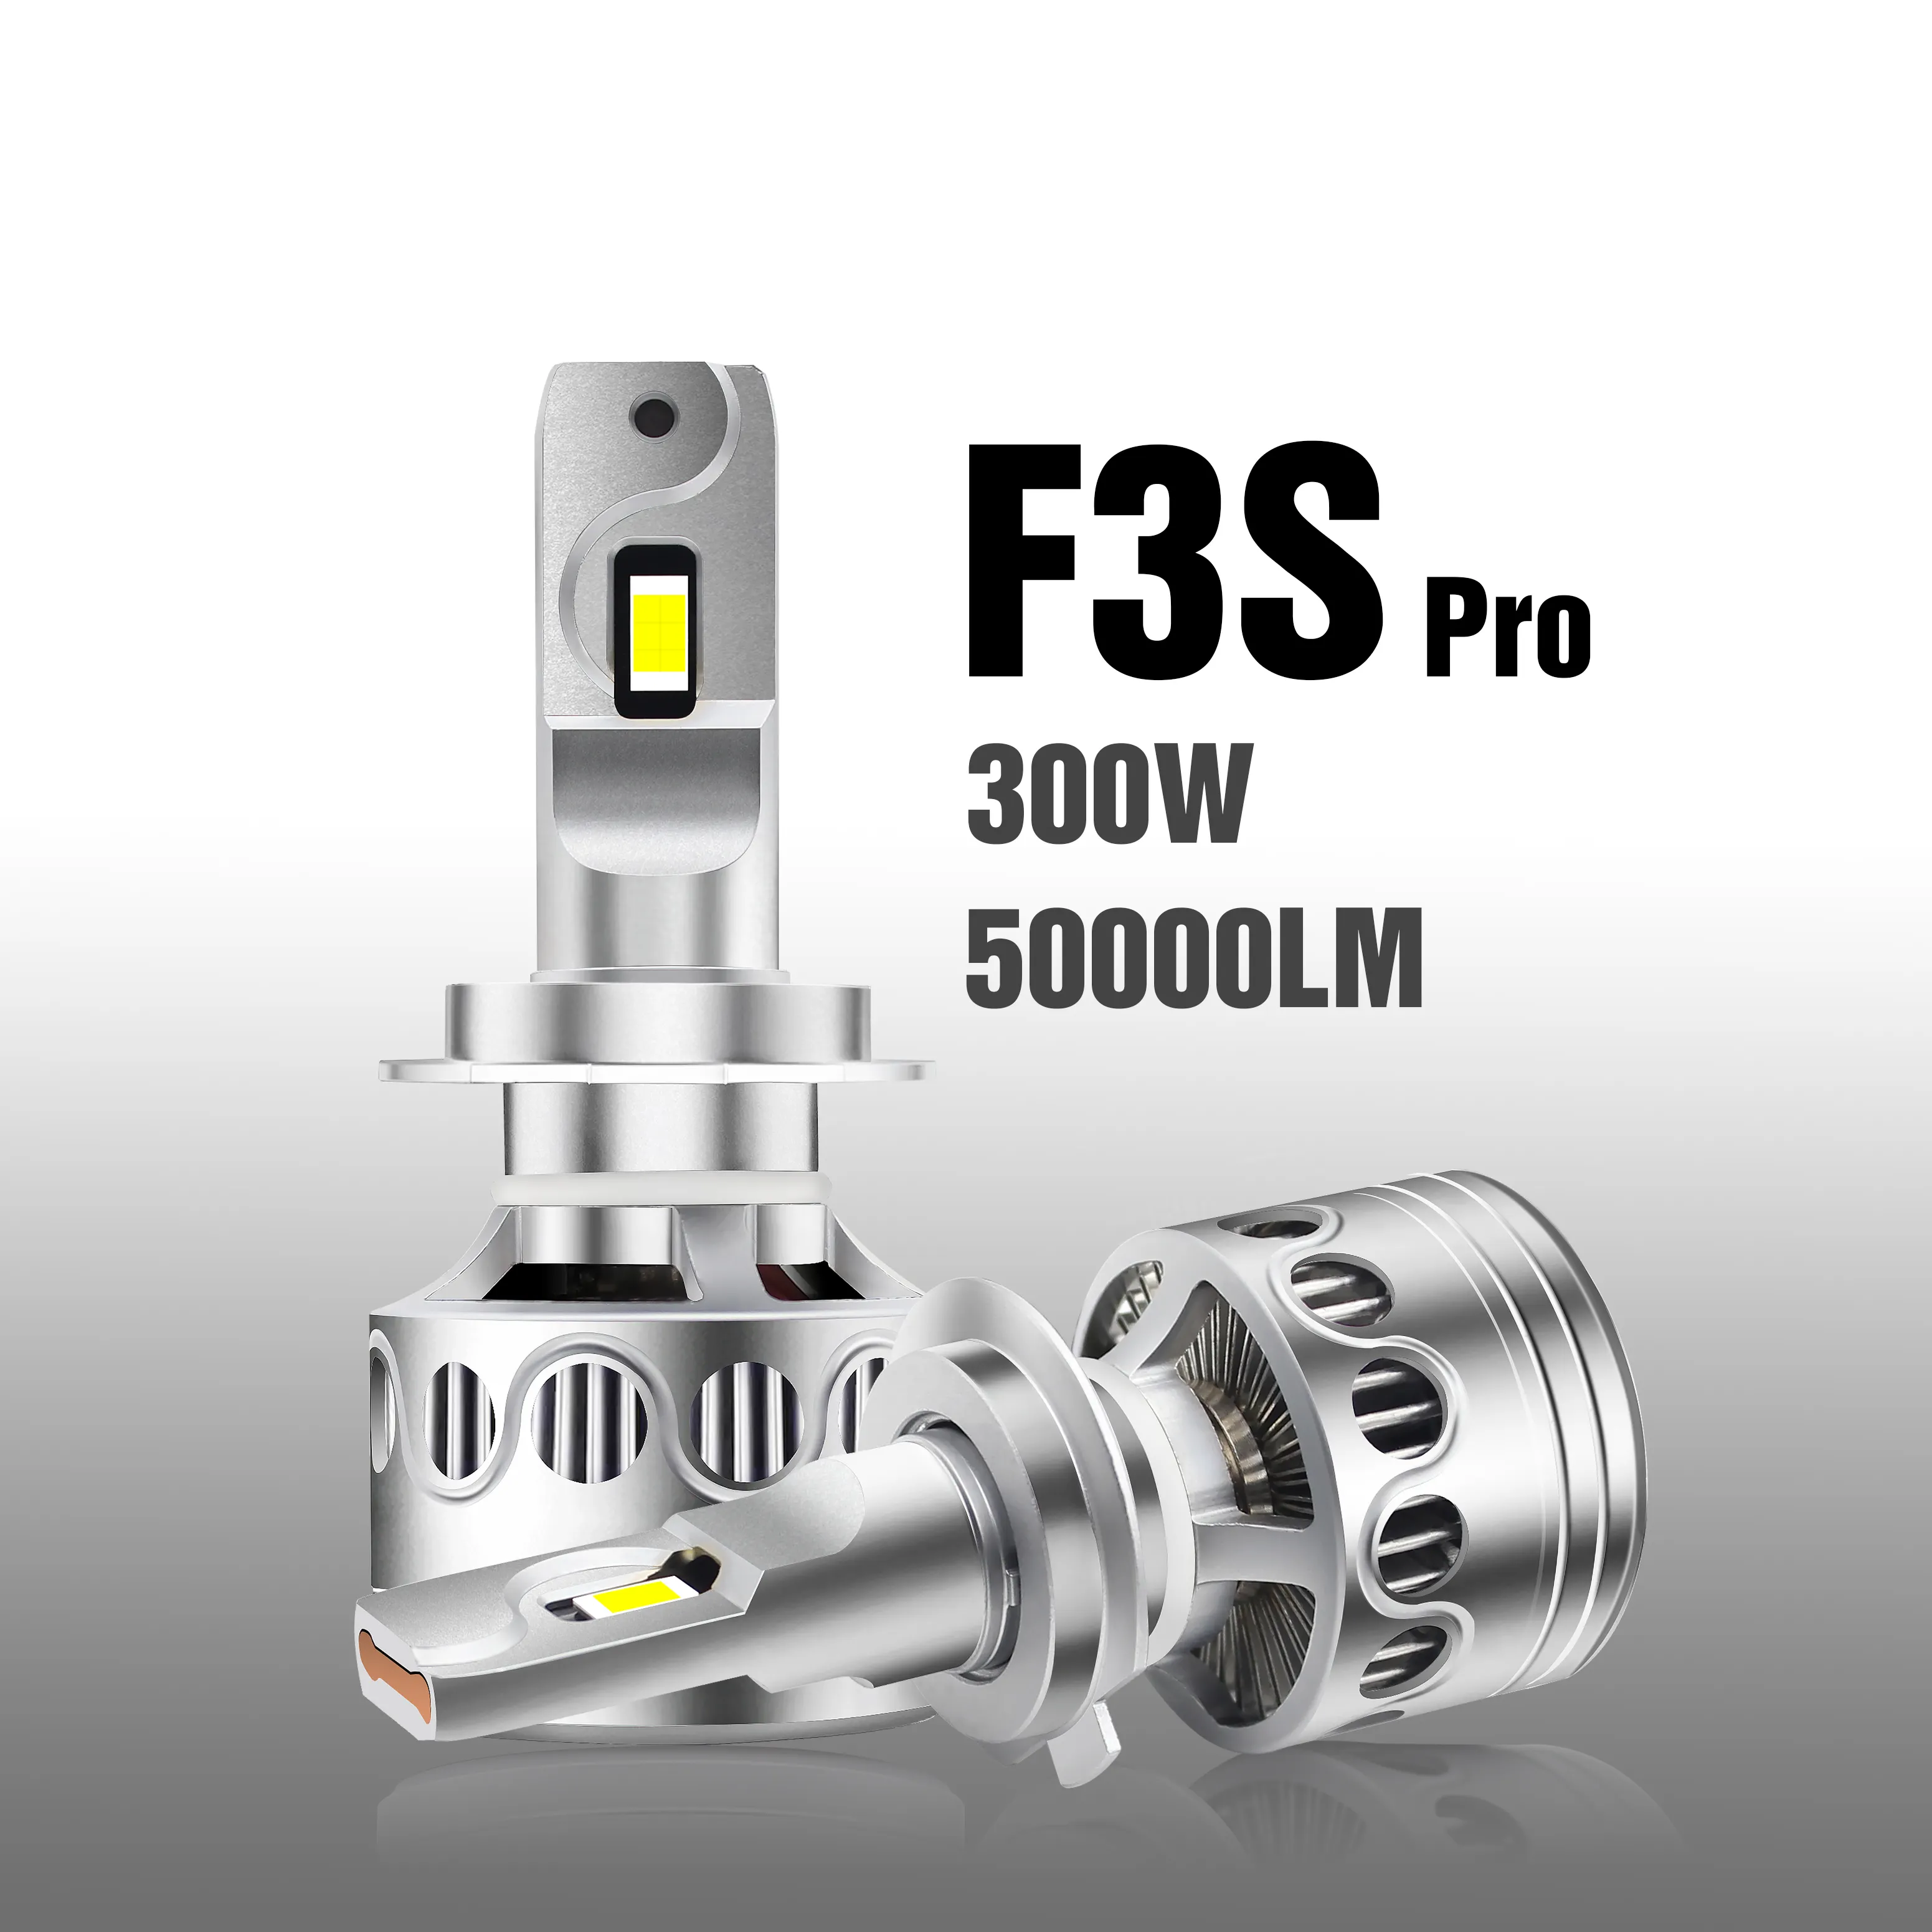 F3S Pro 300W 50000LM faros led Hi/Lo Beam LED Car Light H7 H11 9006 9007 HB5 LED Headlight Bulbs 12V LED Headlight H4 LED